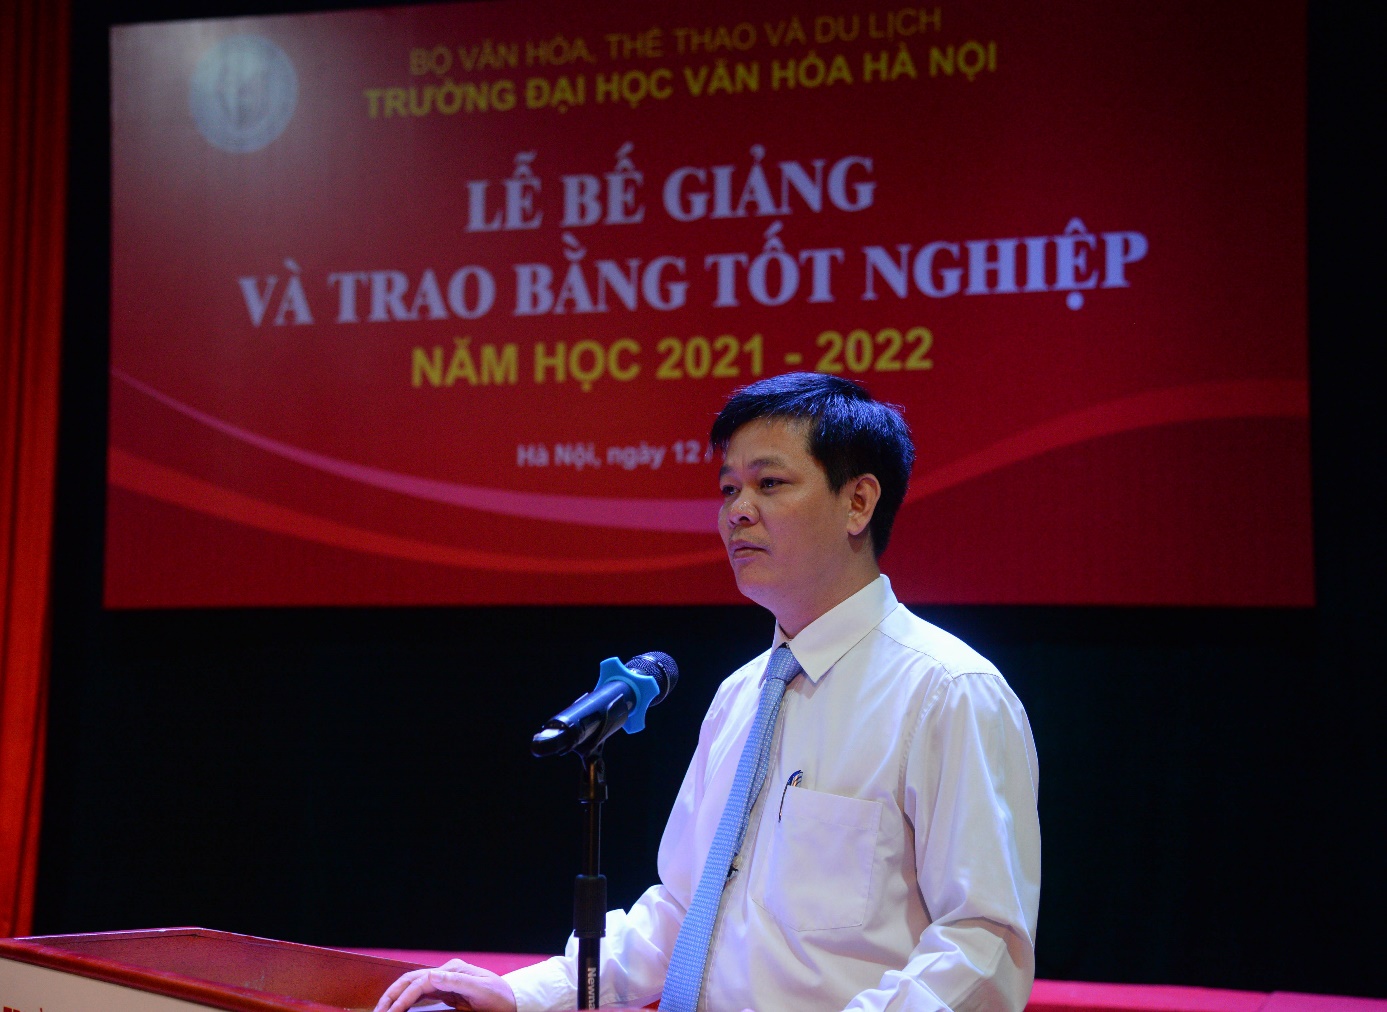 Trường Đại học Văn hóa Hà Nội tổ chức lễ bế giảng và trao bằng tốt nghiệp năm học 2021 – 2022 - Ảnh 3.